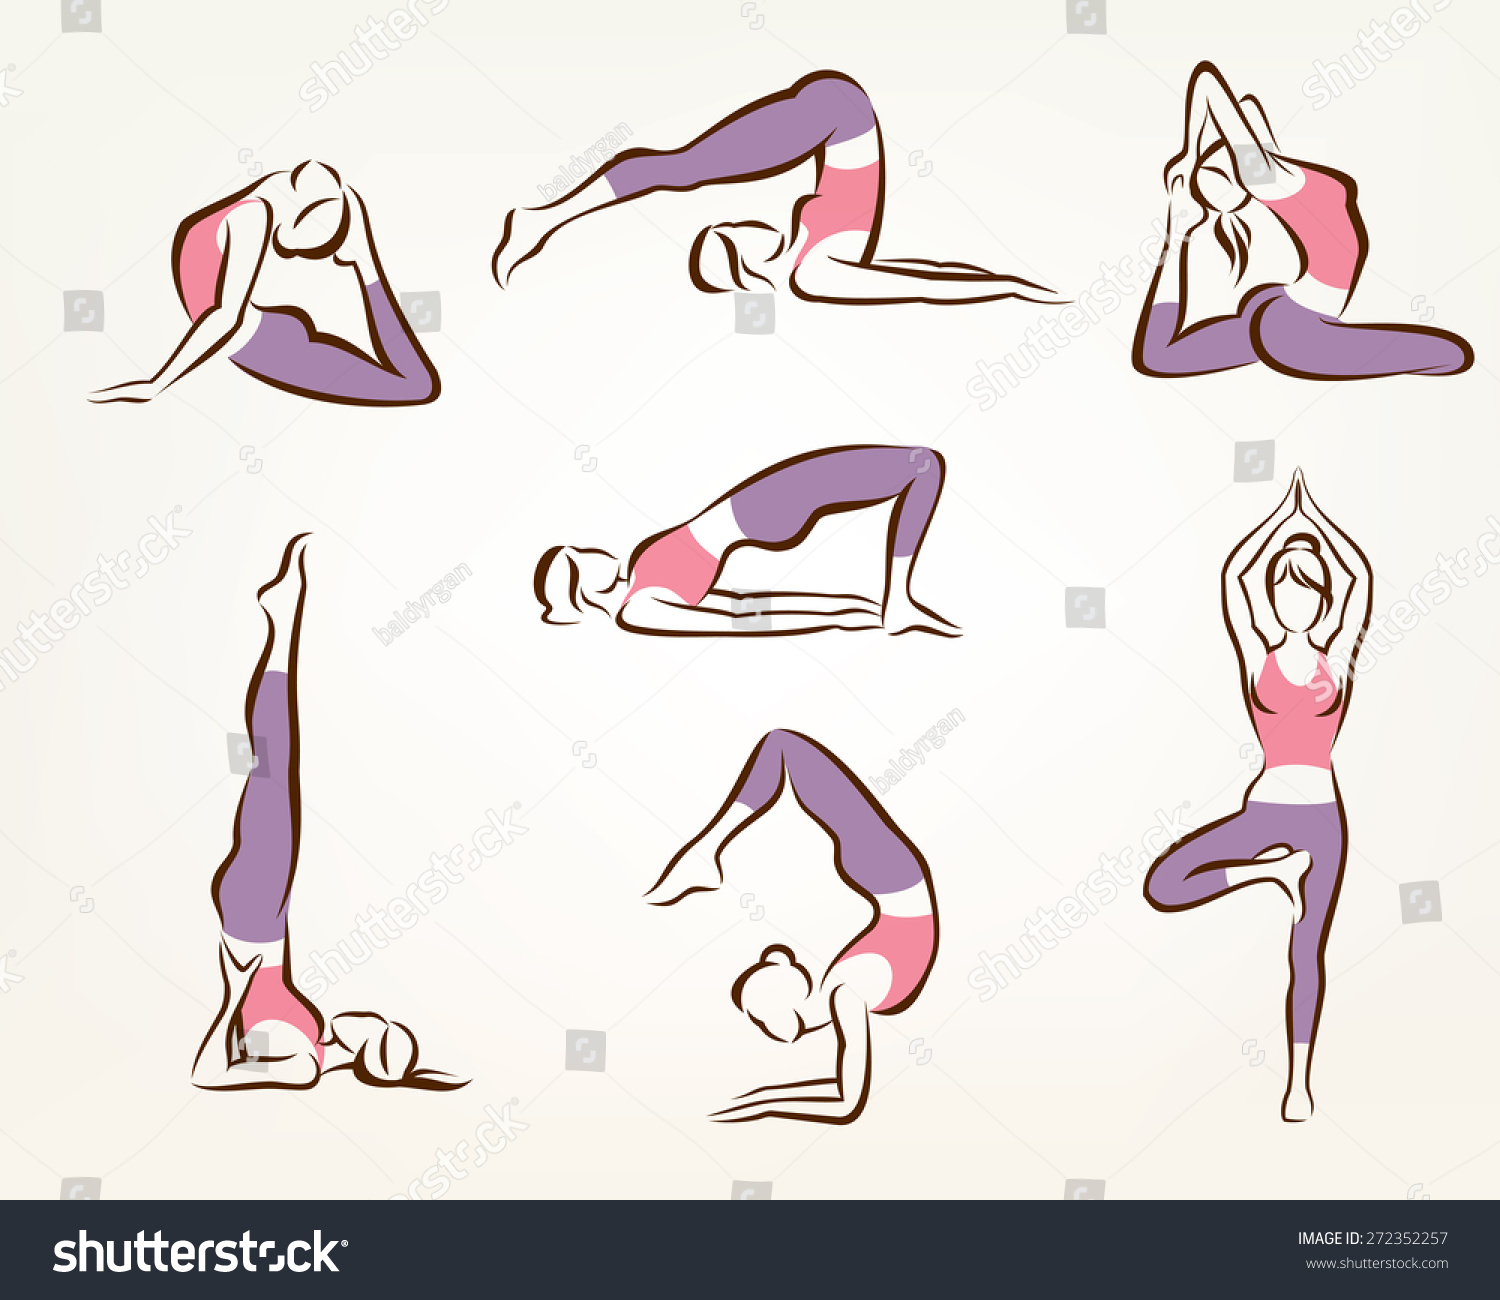 clipart yoga poses stylized - photo #44